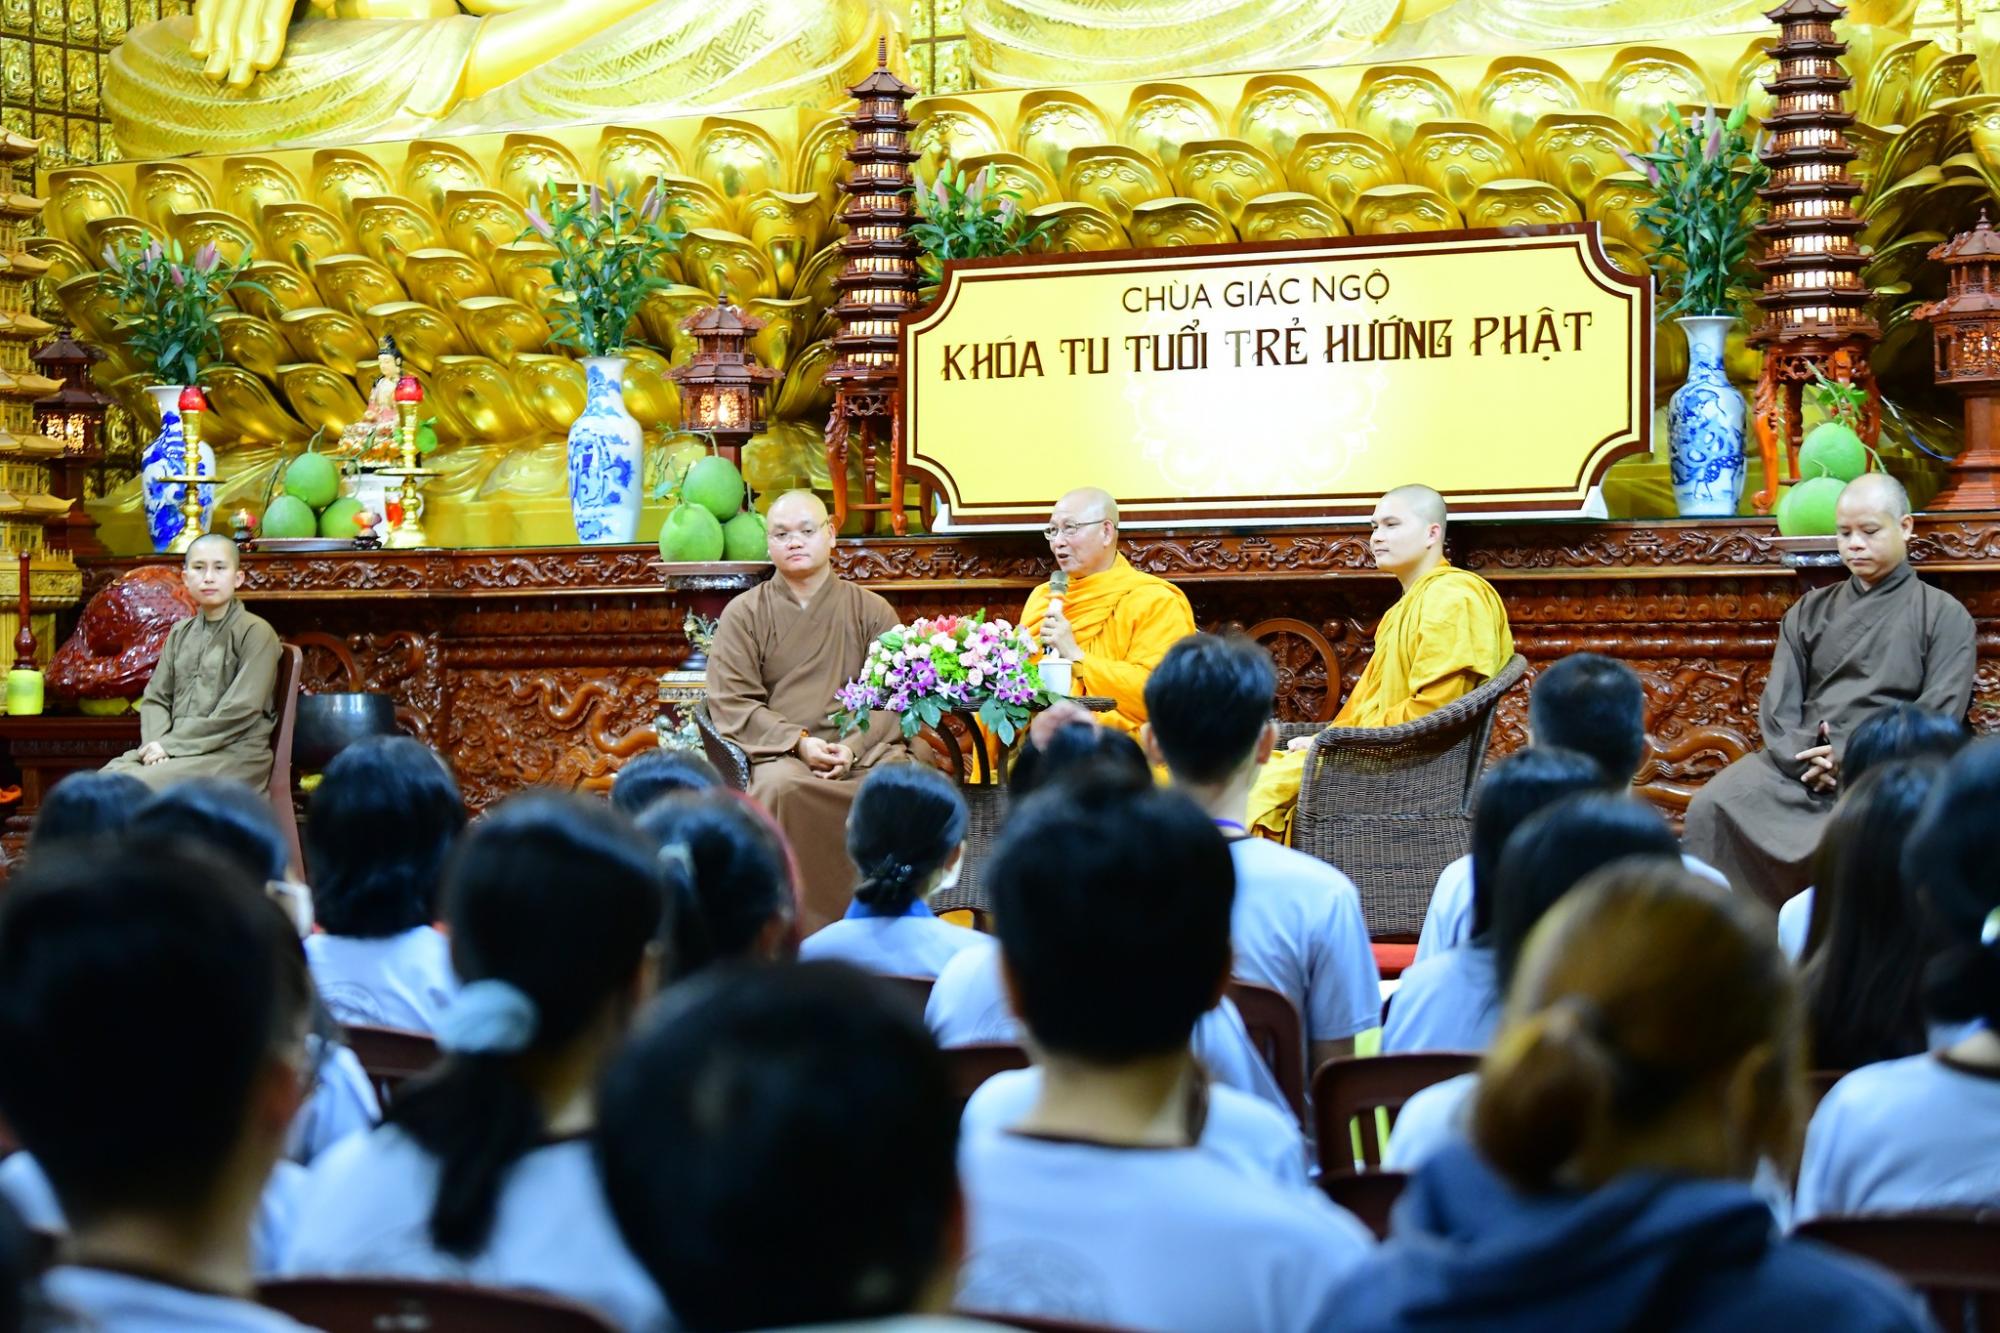 HT. Thích Minh Hồi gặp gở các bạn trẻ trong khóa tu Ngày An Lạc tại chùa Giác Ngộ